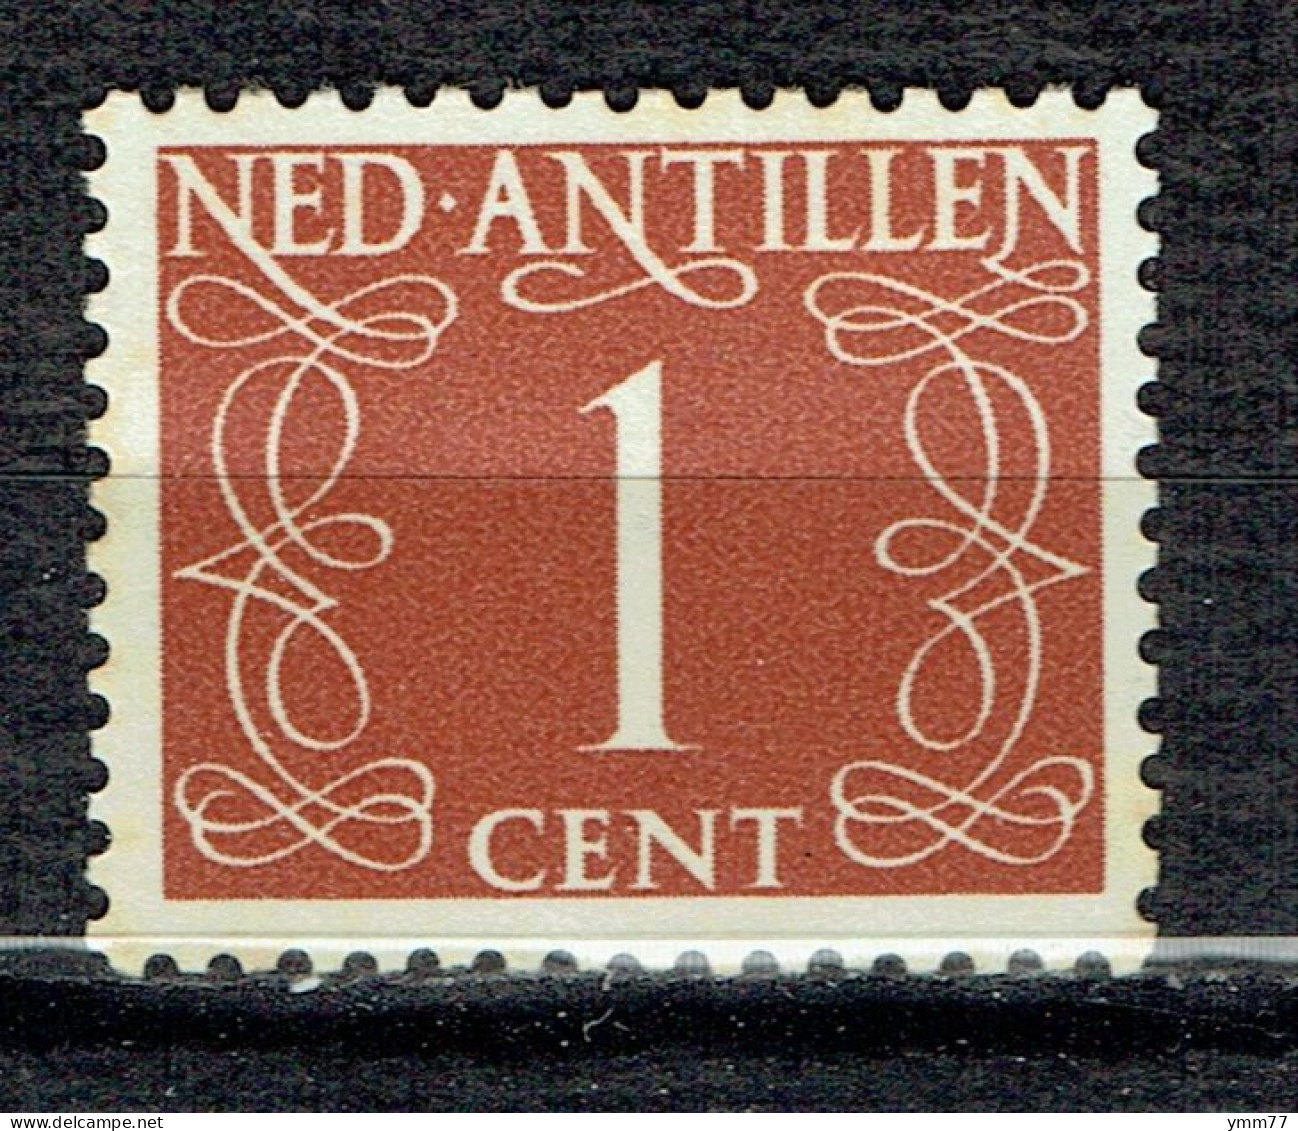 Timbre Des Pays-Bas Légendé Ned. Antillen - Niederländische Antillen, Curaçao, Aruba